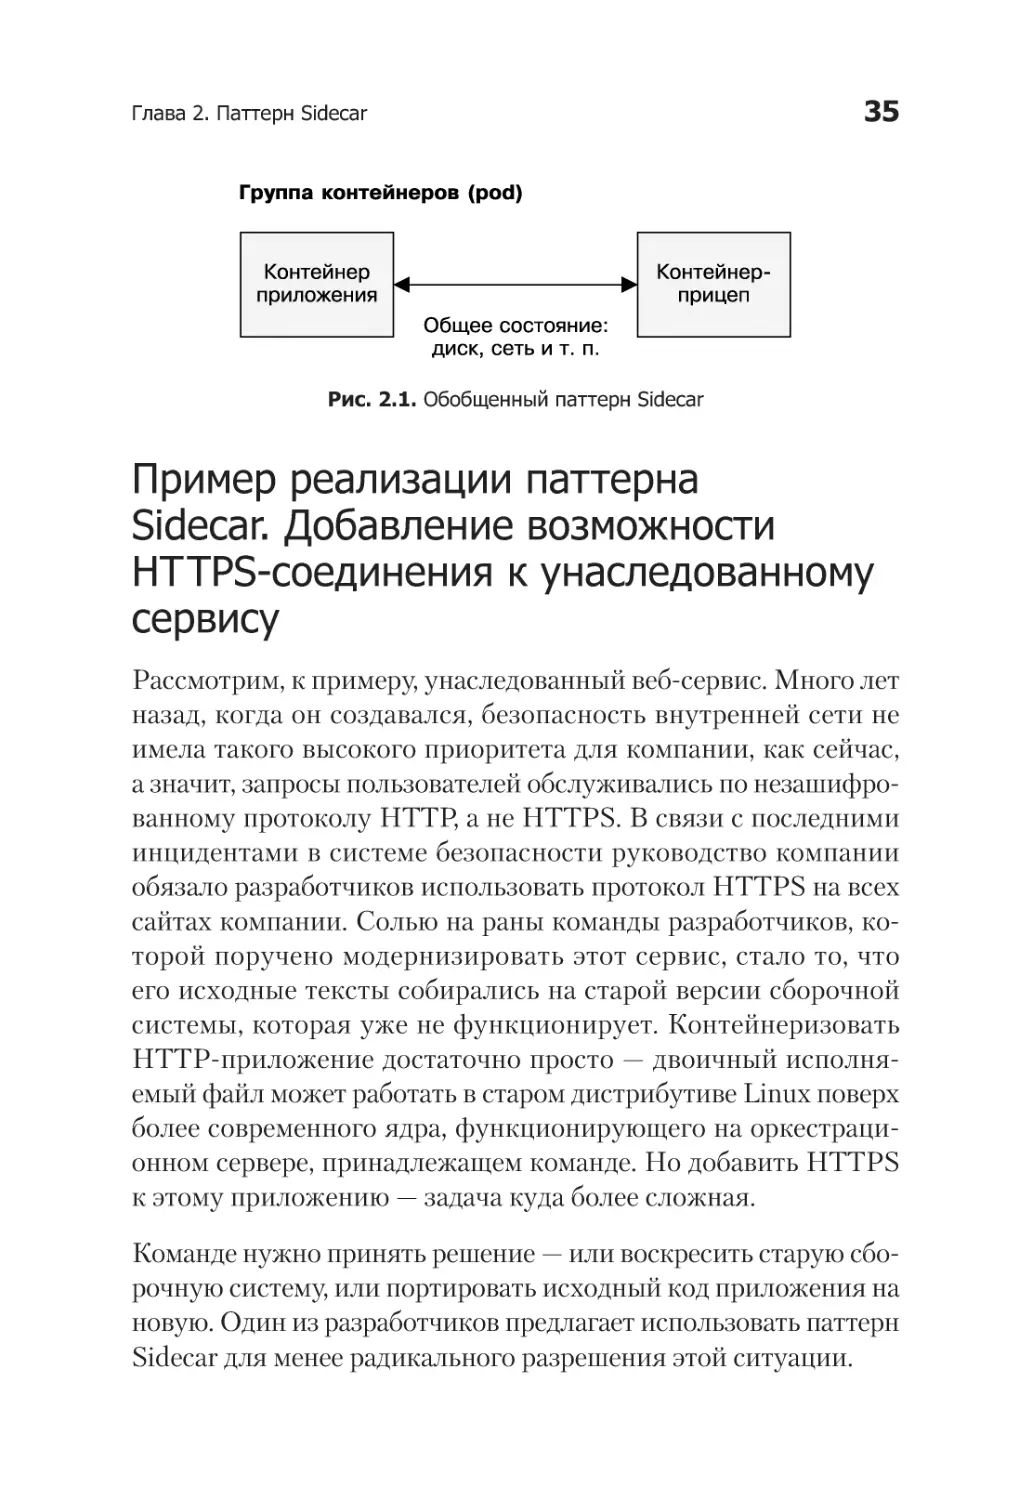 Пример реализации шаблона Sidecar. Добавление возможности HTTPS-соединения к унаследованному сервису